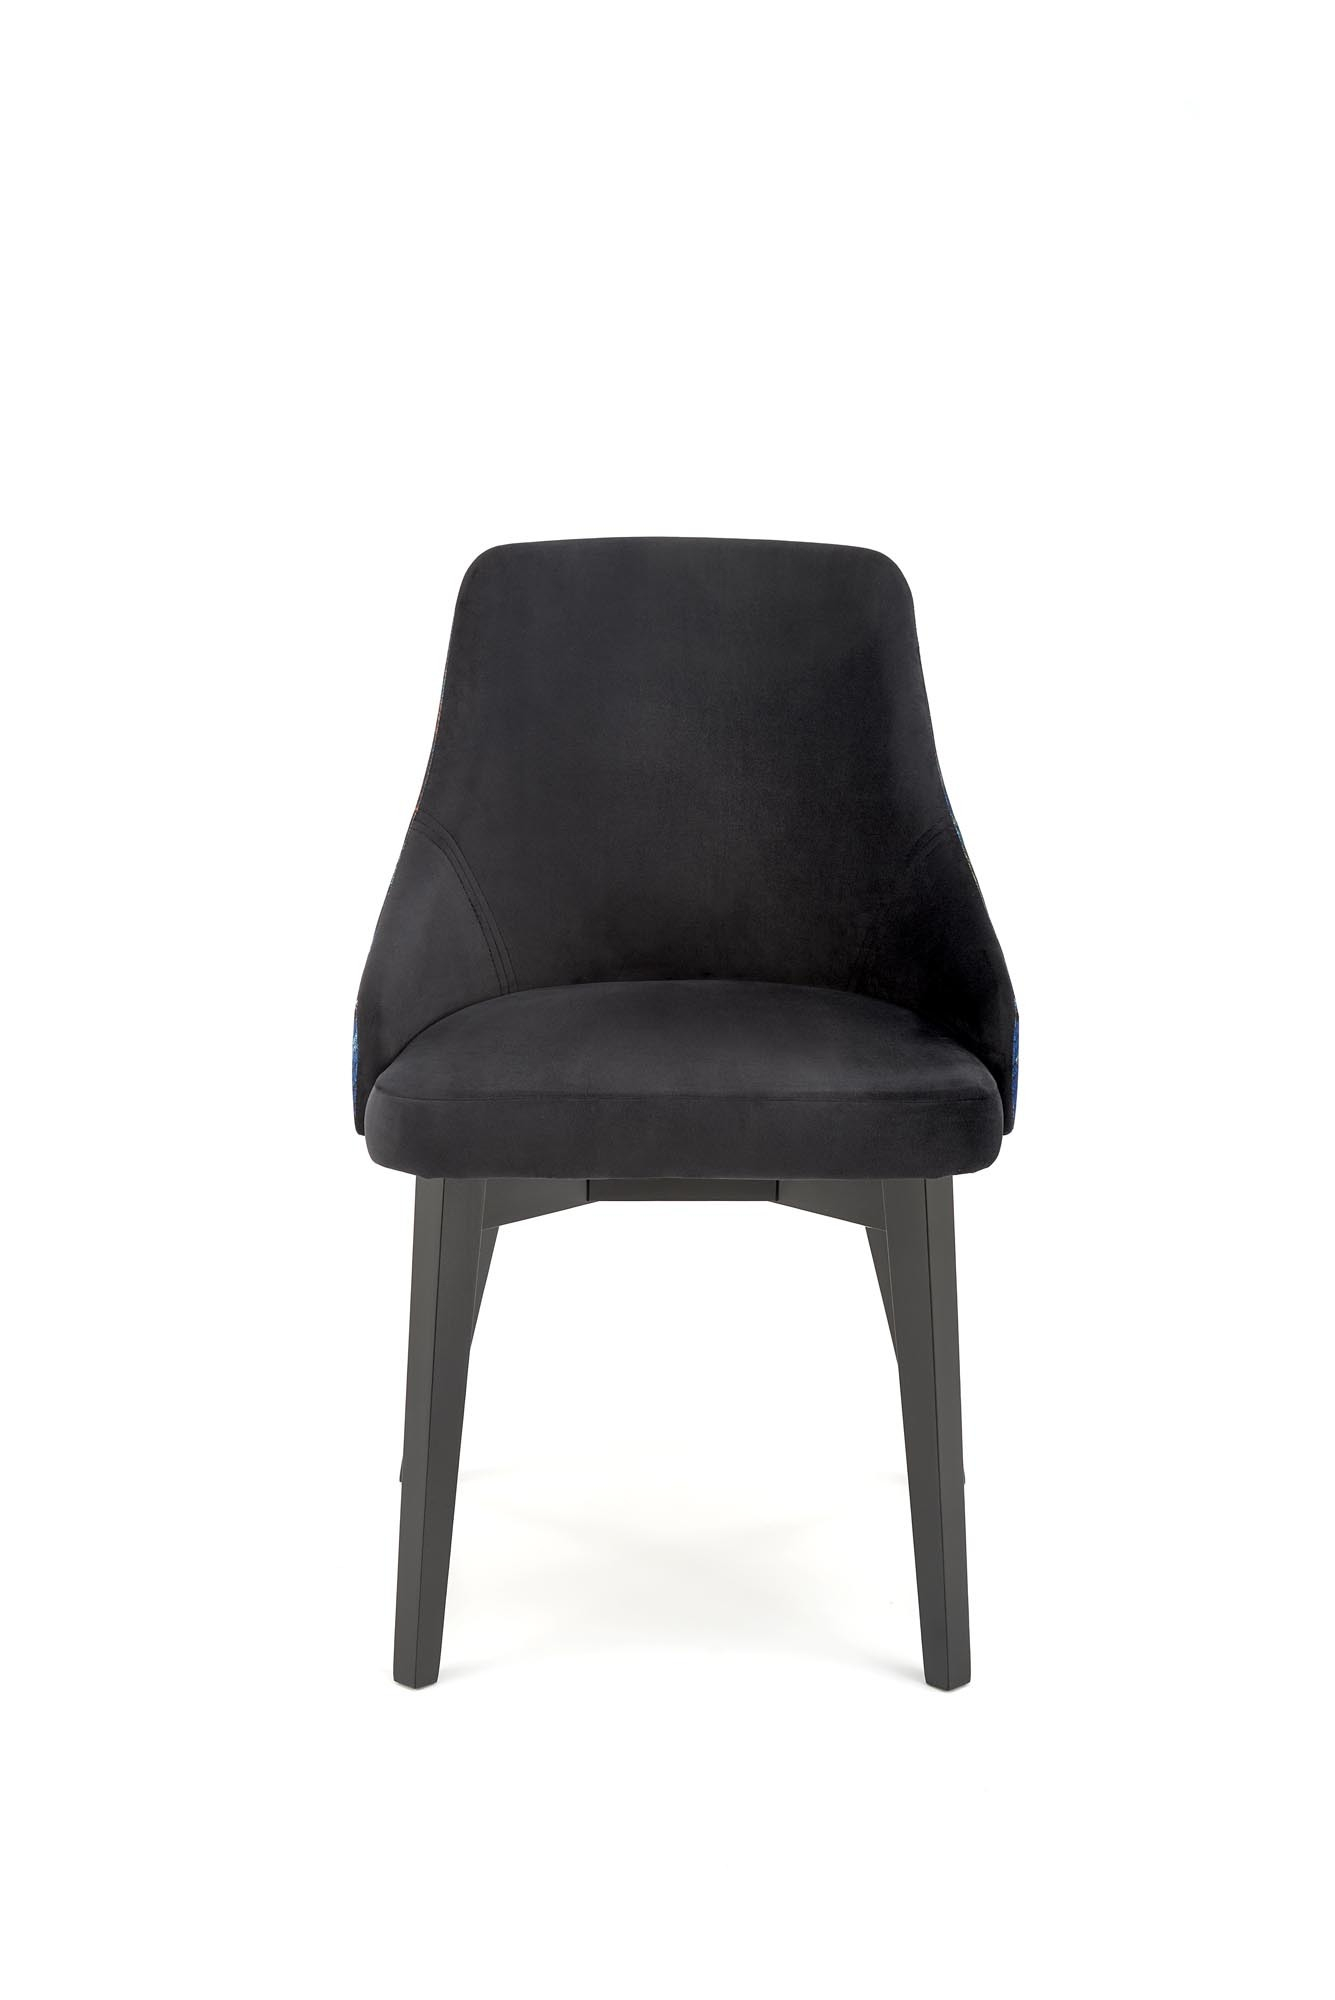 ENDO krzesło czarny / tap: BLUVEL 19 czarny